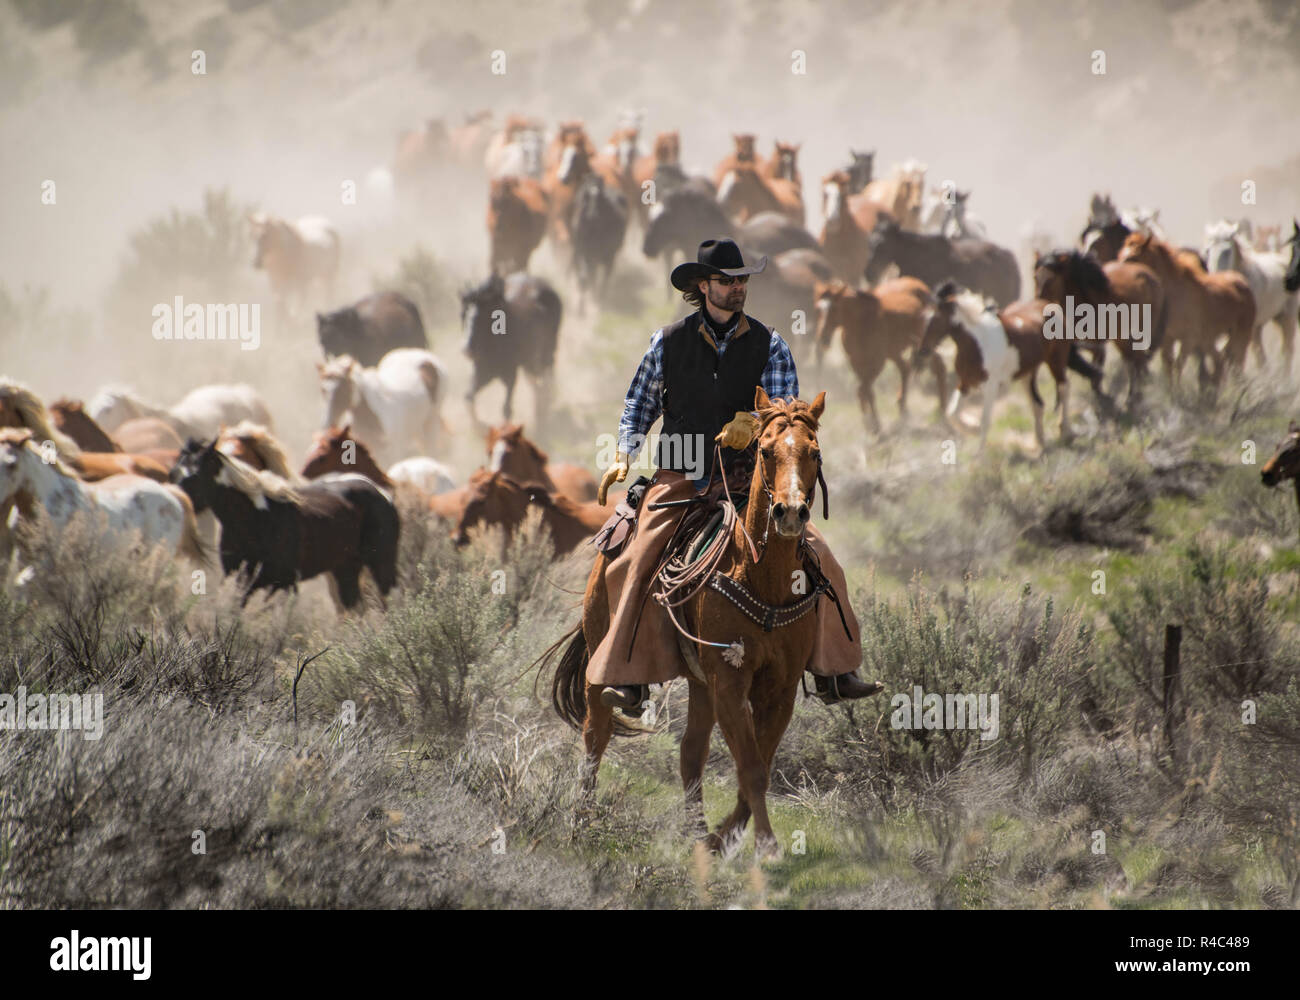 Wrangler Cowboy Ranch Hand reiten Sauerampfer Pferd im Galopp aufrunden Herde der Pferde während Trail fahren, Craig, CO, USA Mai 5, 2018 Stockfoto